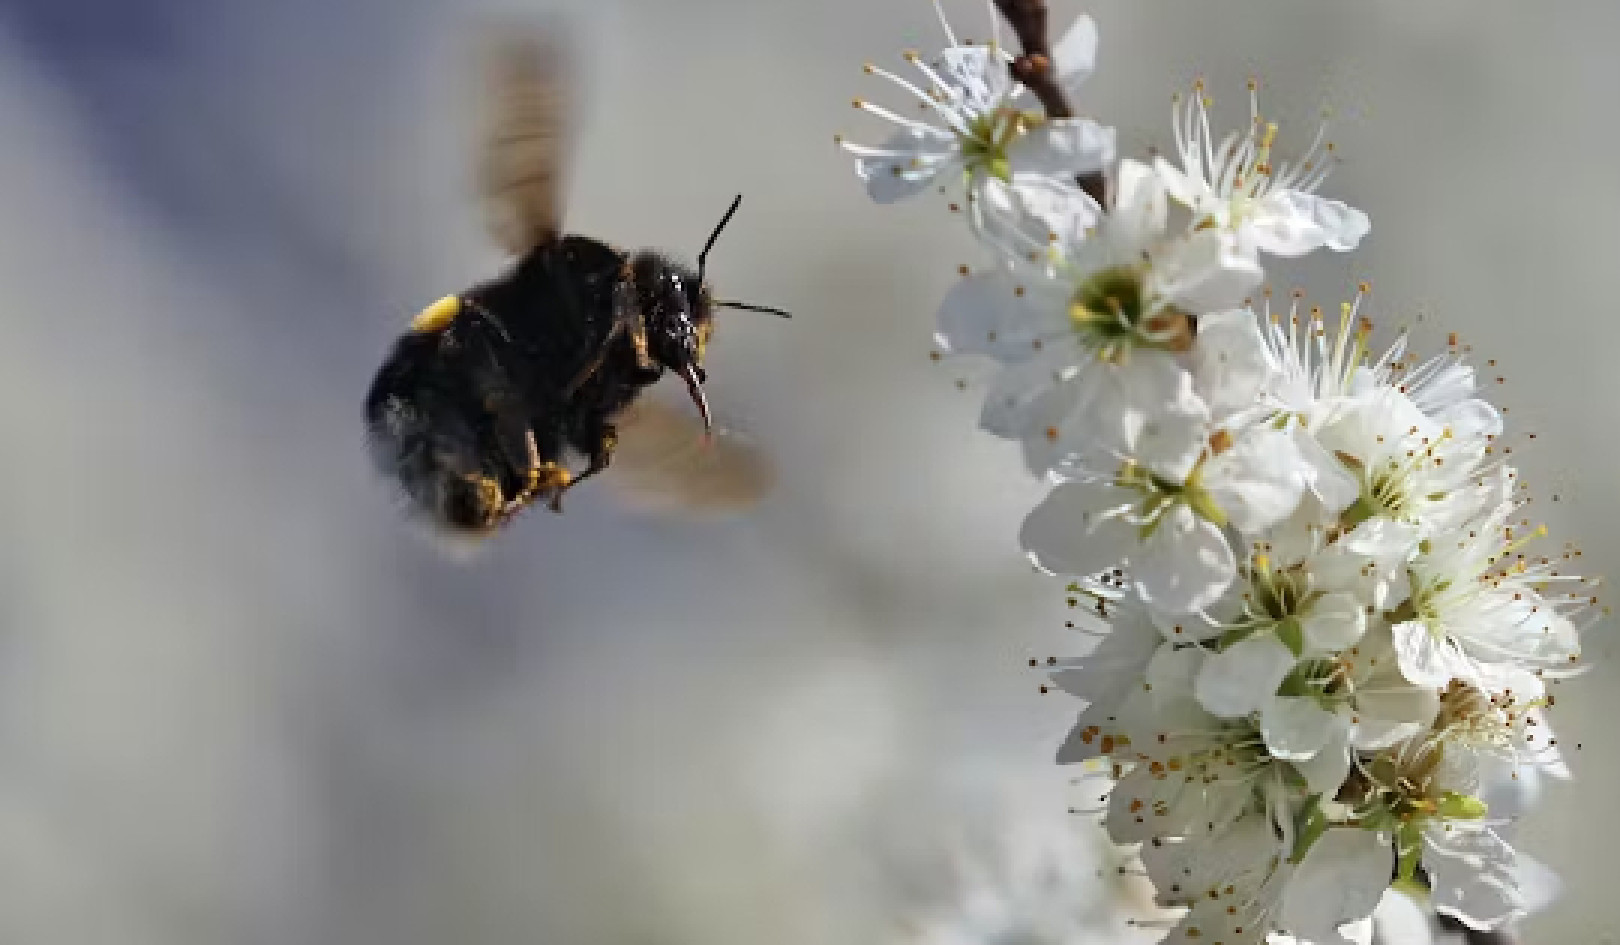 Mở khóa bí mật của loài ong: Cách chúng nhận thức, điều hướng và phát triển